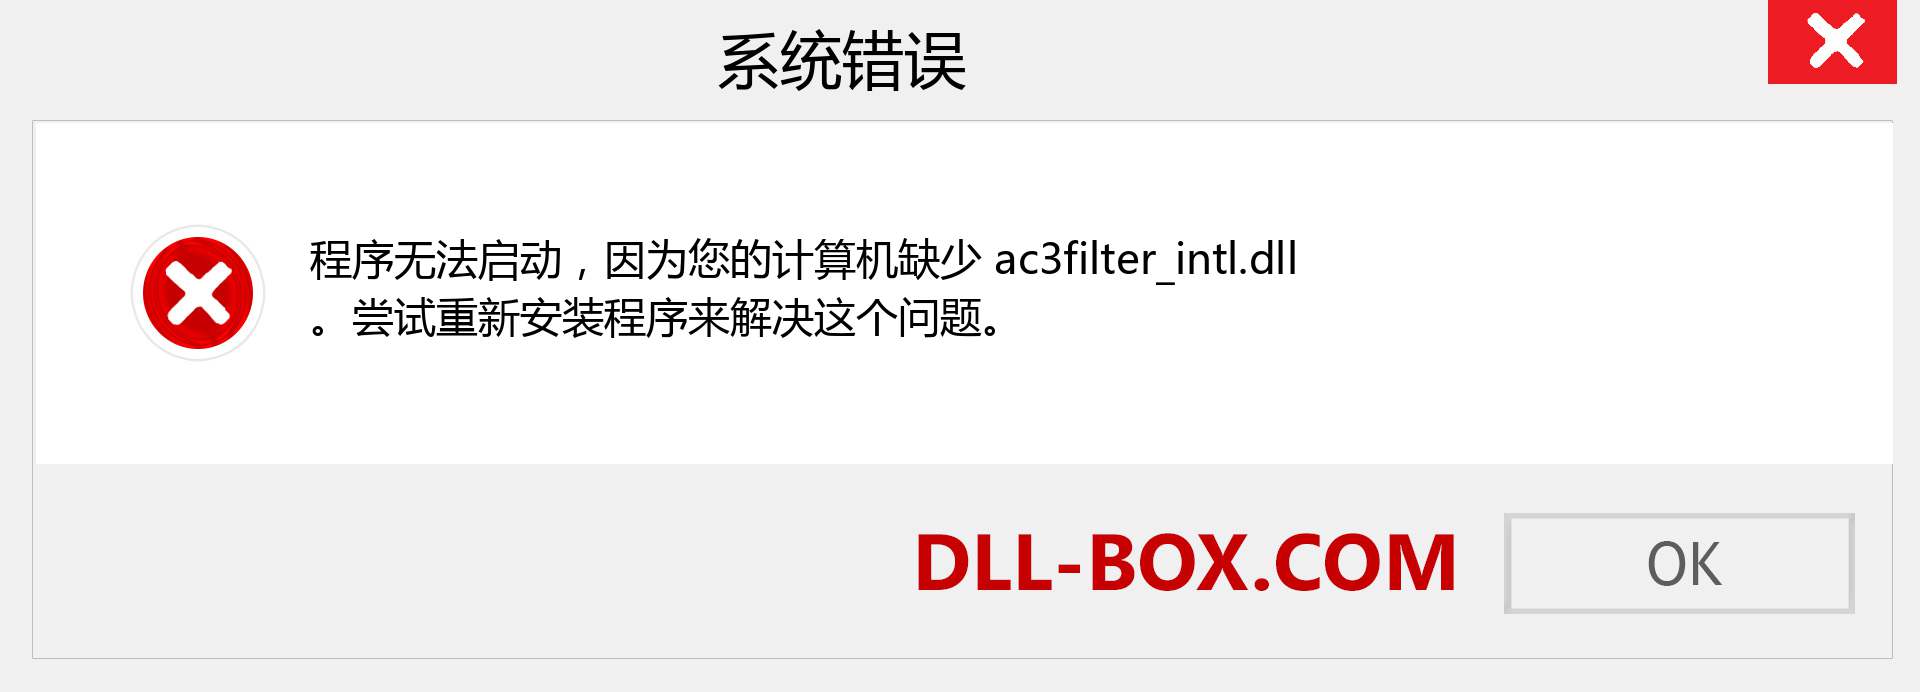 ac3filter_intl.dll 文件丢失？。 适用于 Windows 7、8、10 的下载 - 修复 Windows、照片、图像上的 ac3filter_intl dll 丢失错误